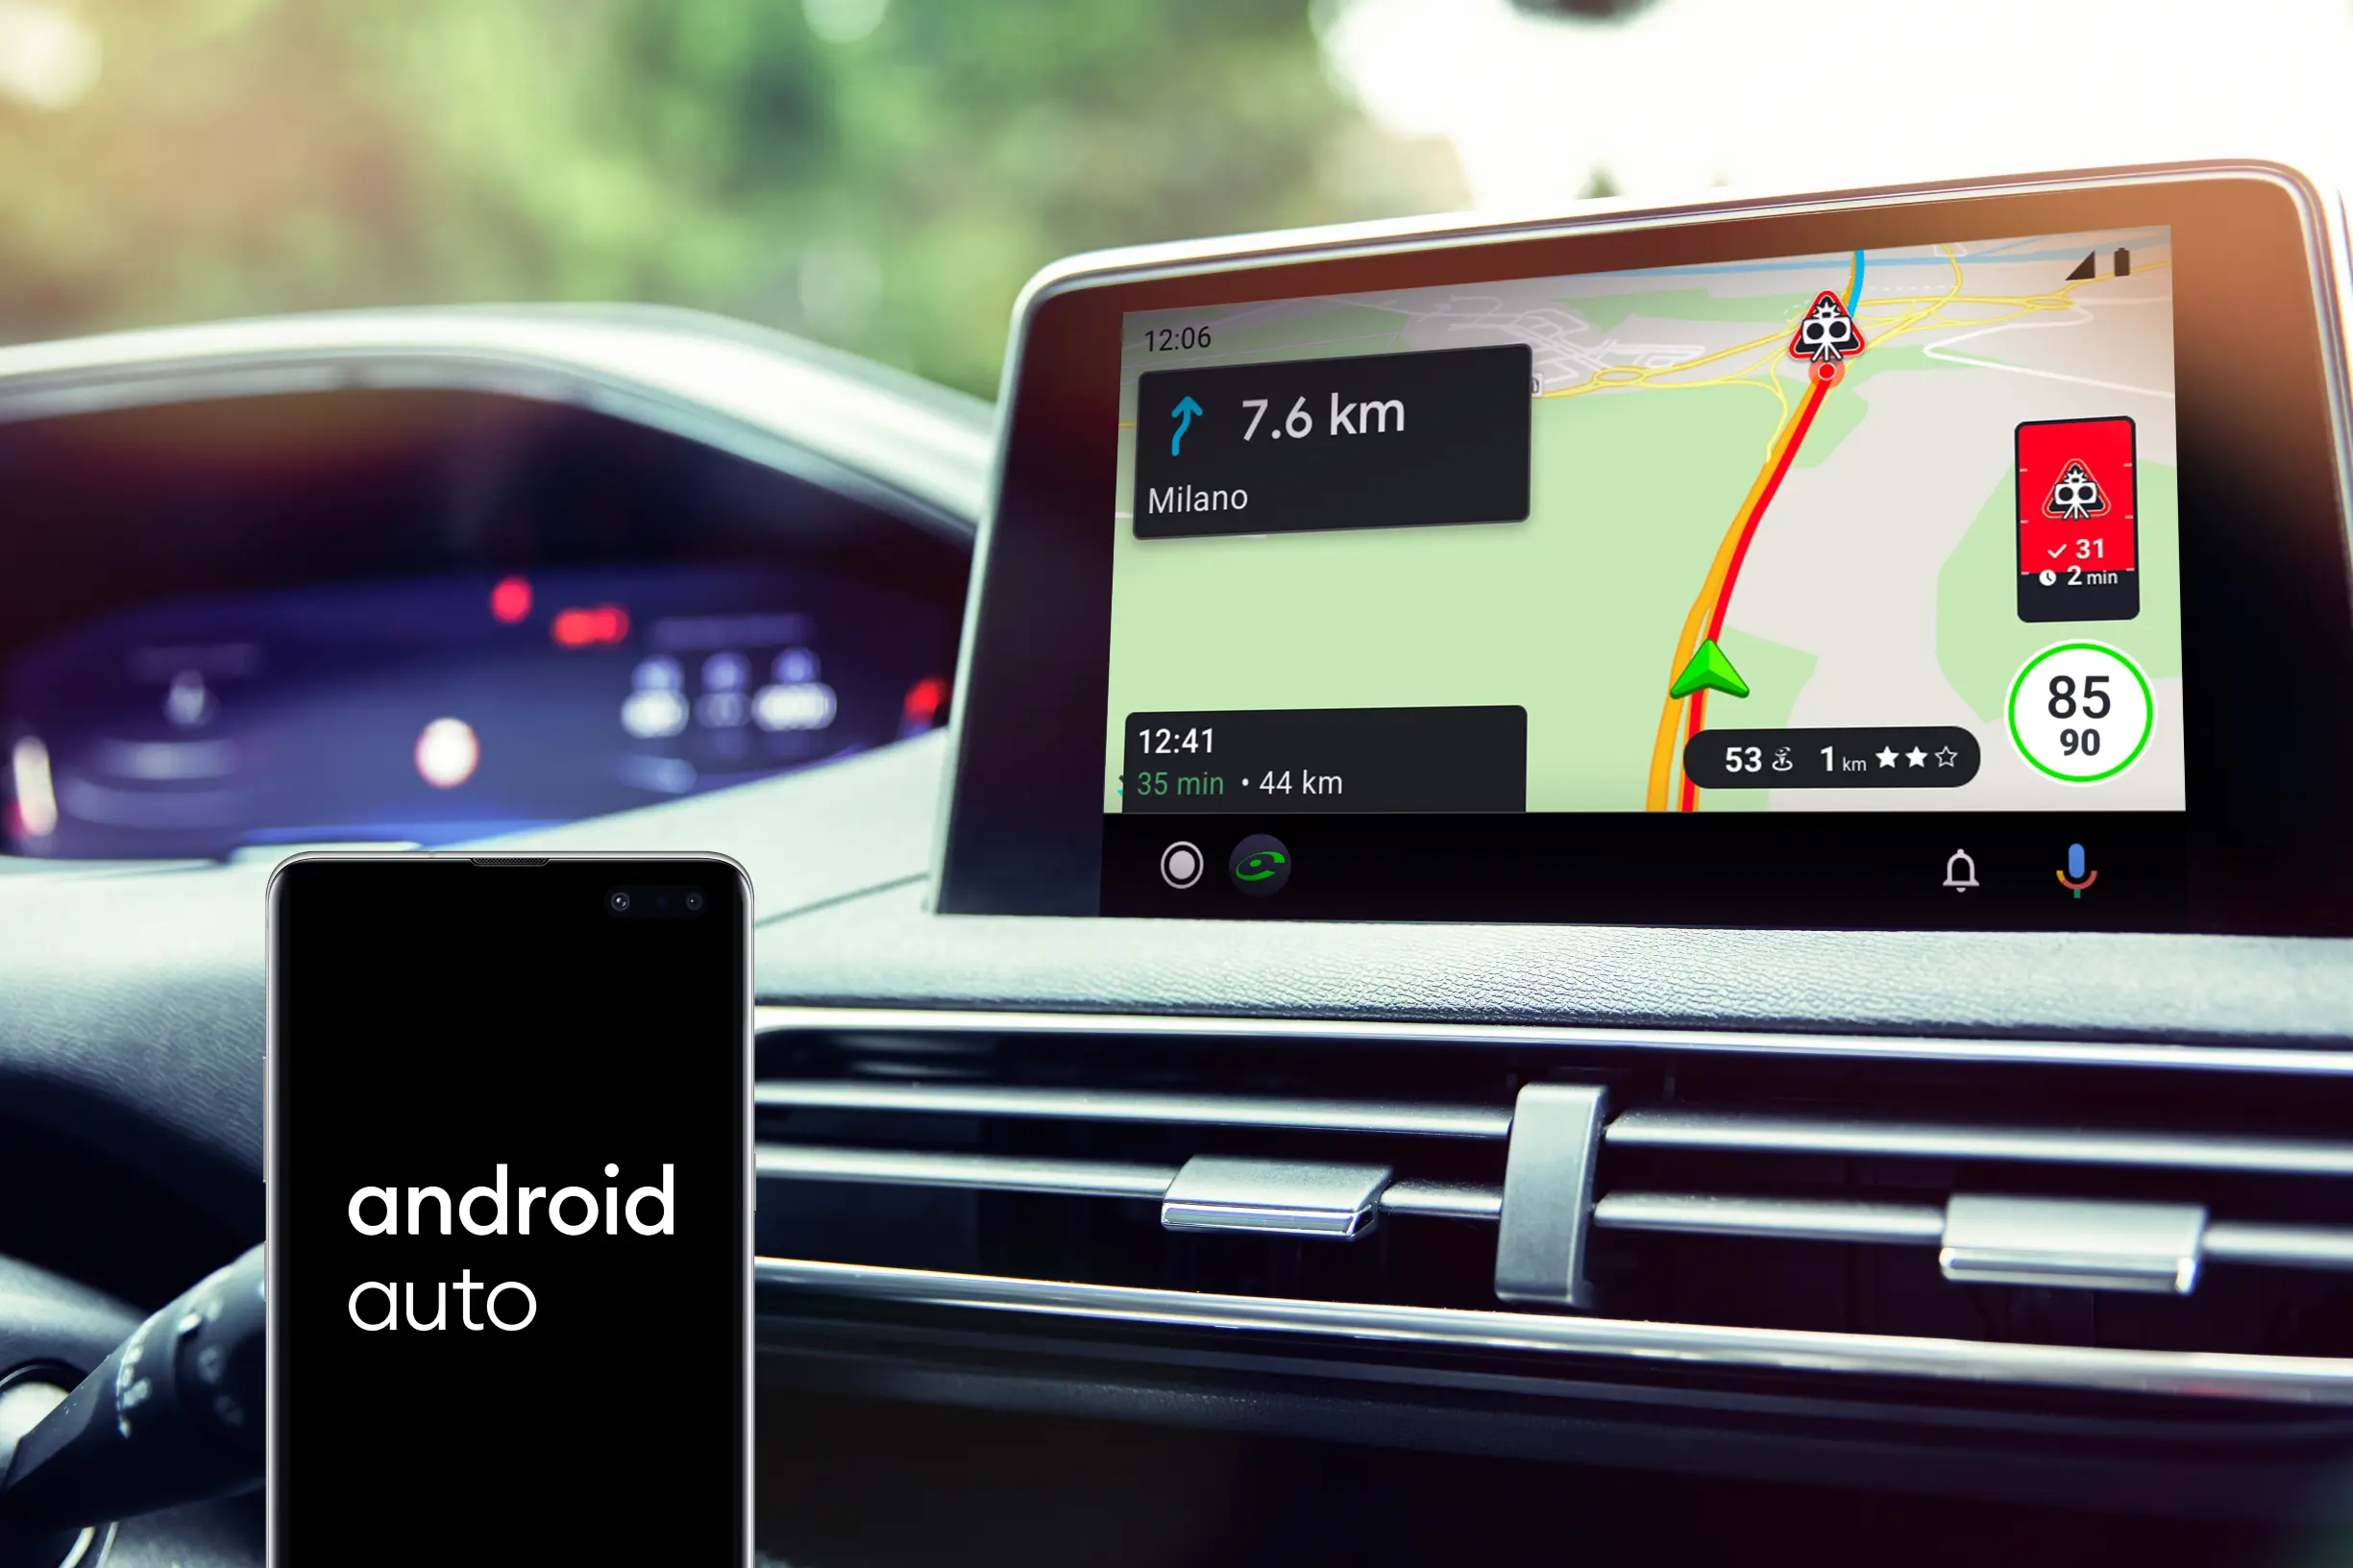 Guida connessa, la tecnologia COYOTE arriva su Android Auto thumbnail